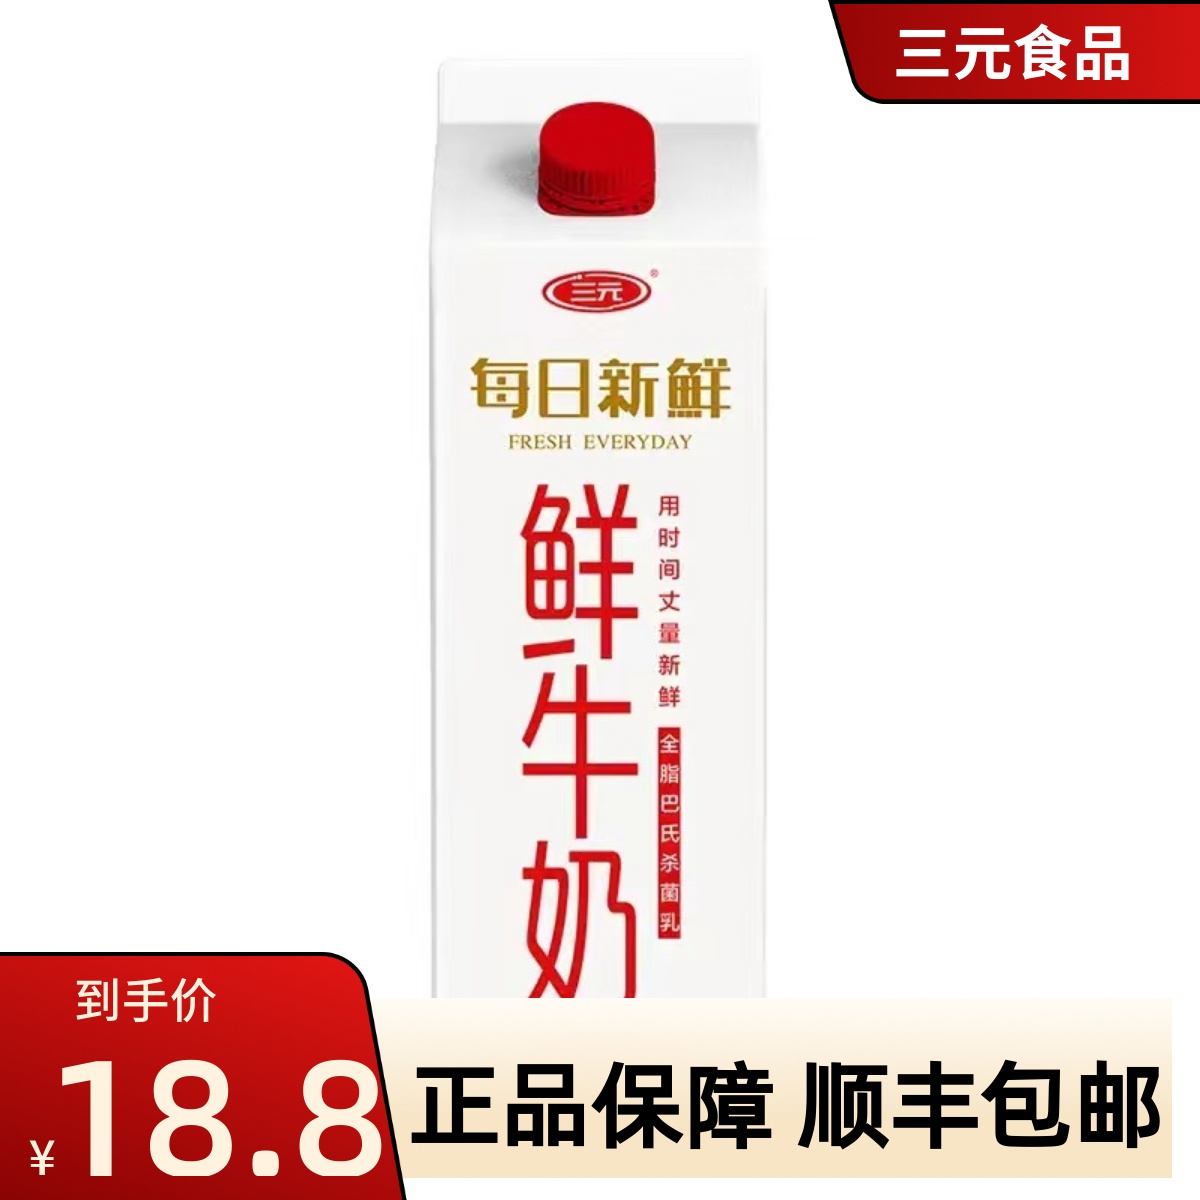 北京三元每日新鲜全脂鲜牛奶纸屋巴氏杀菌生牛乳低温牛奶